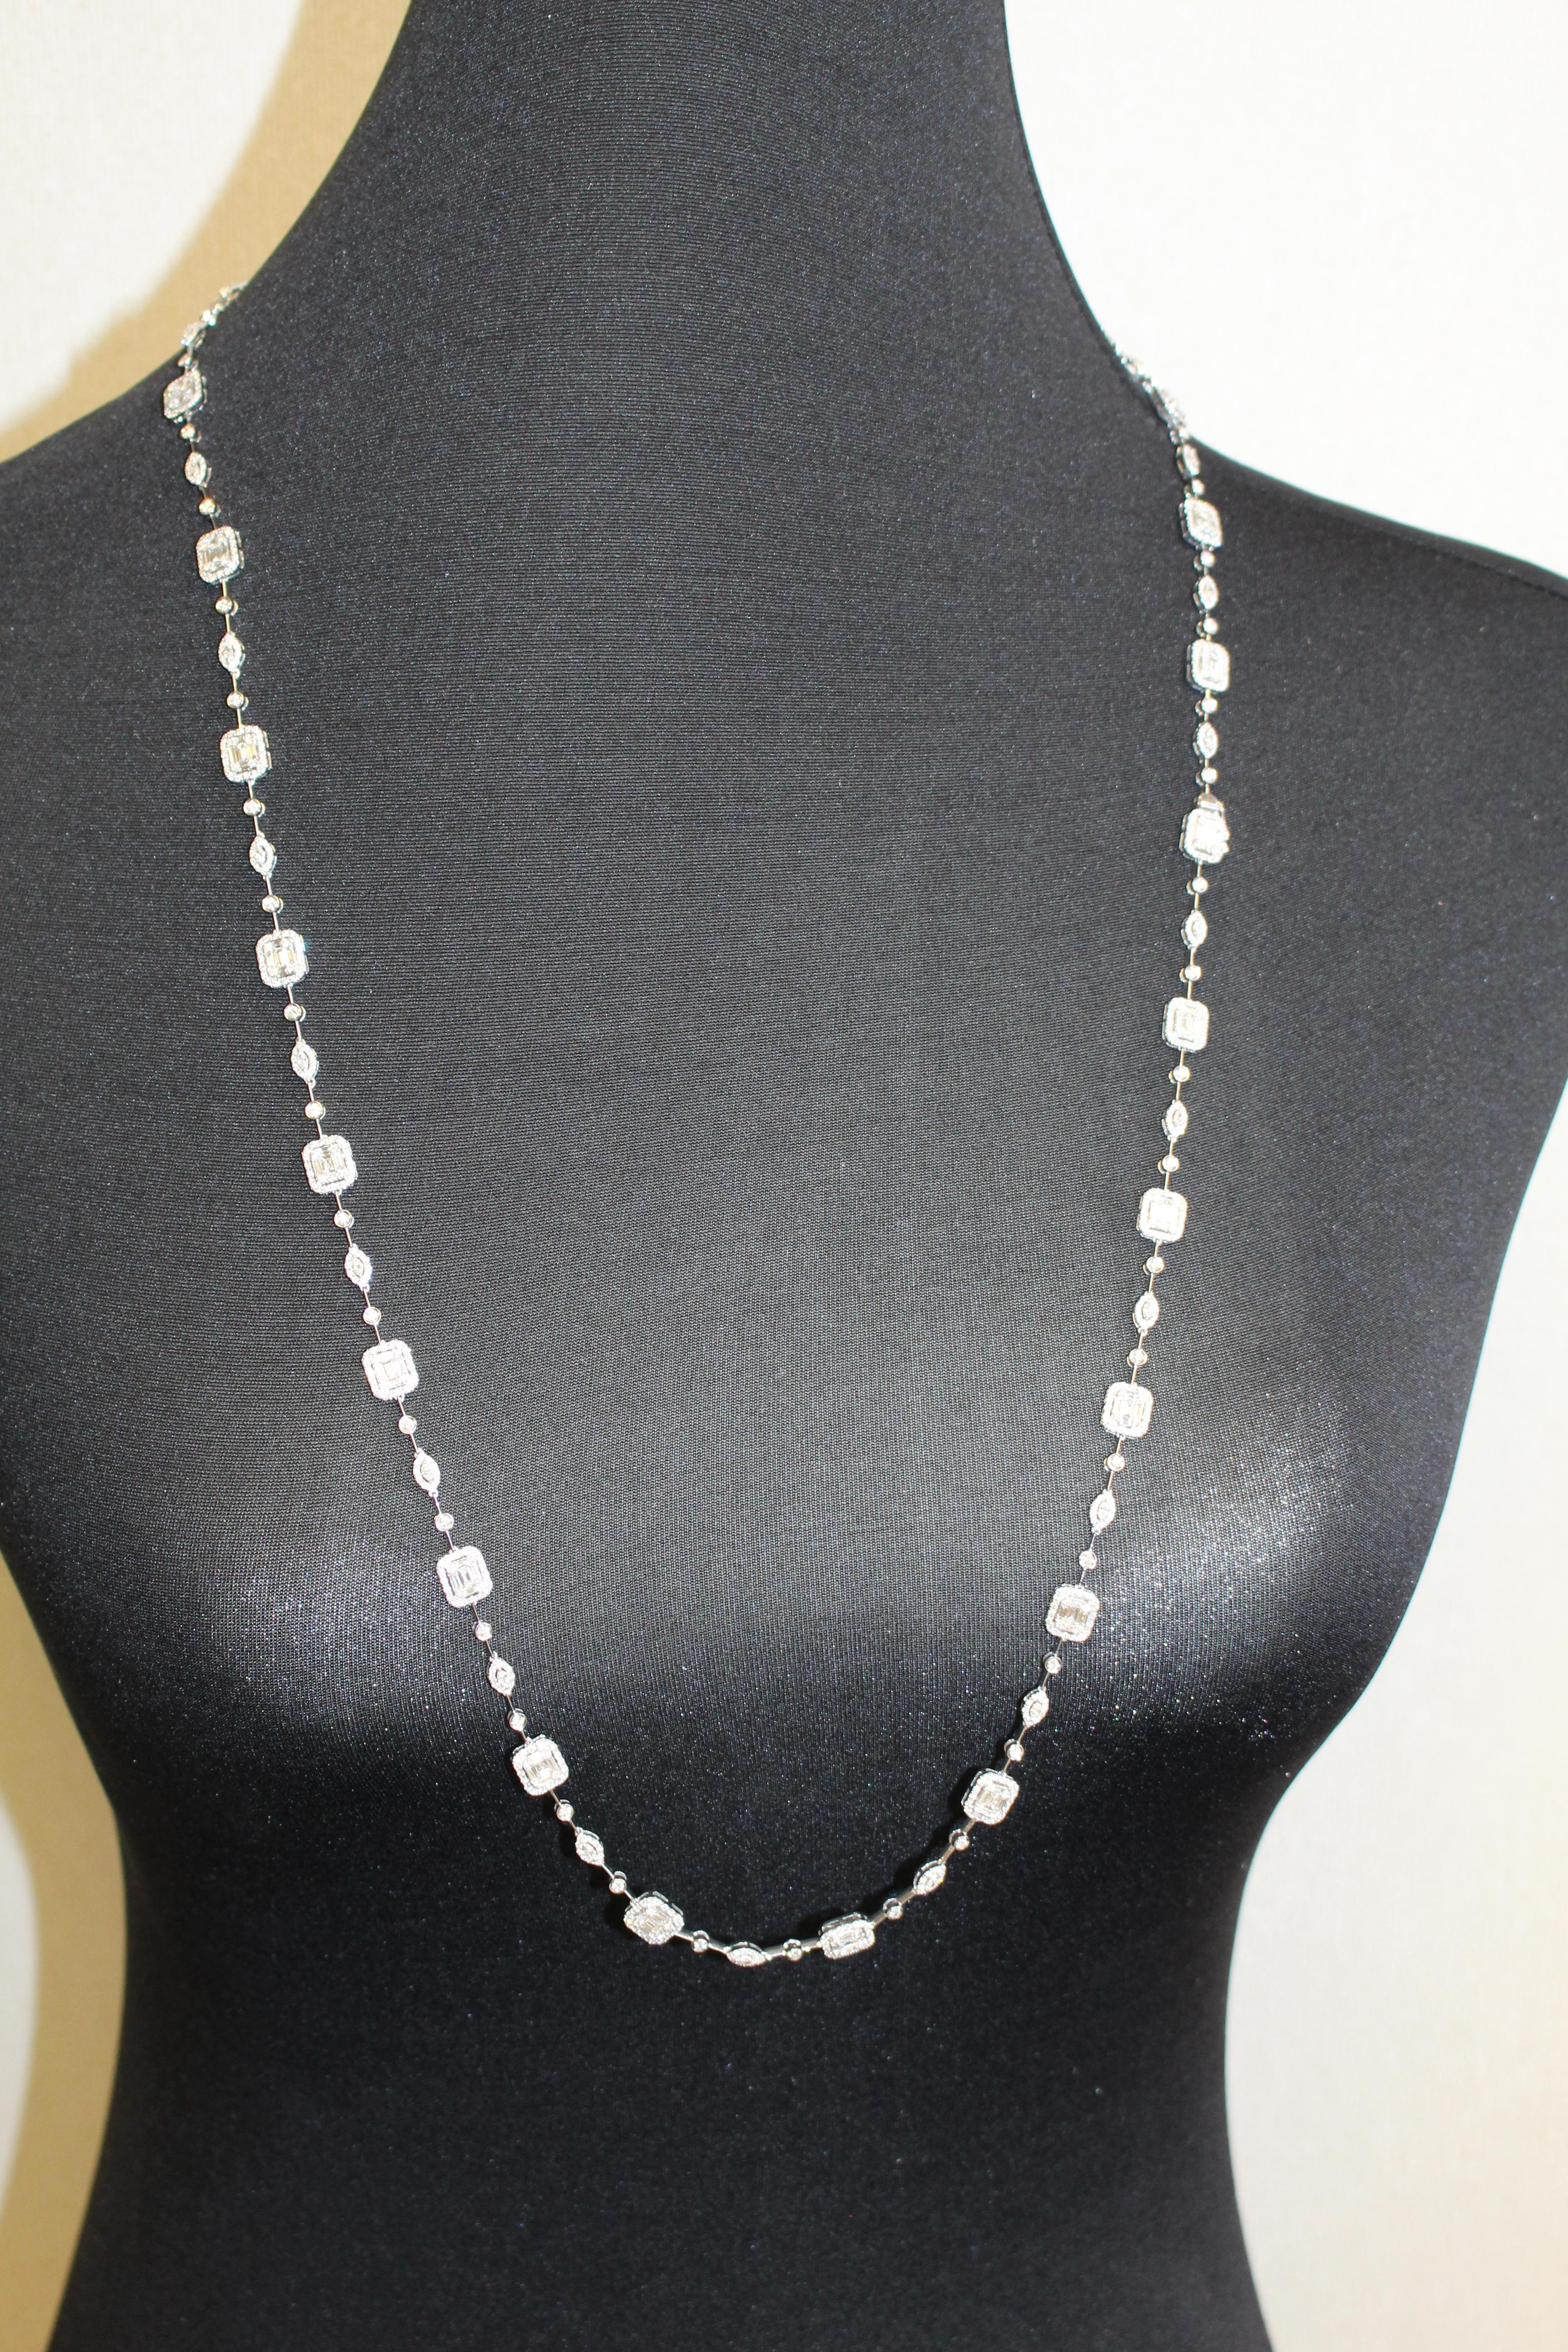 10.92 Carat Emerald Cut Cluster Diamond Illusion Necklace and Bracelet Set 4